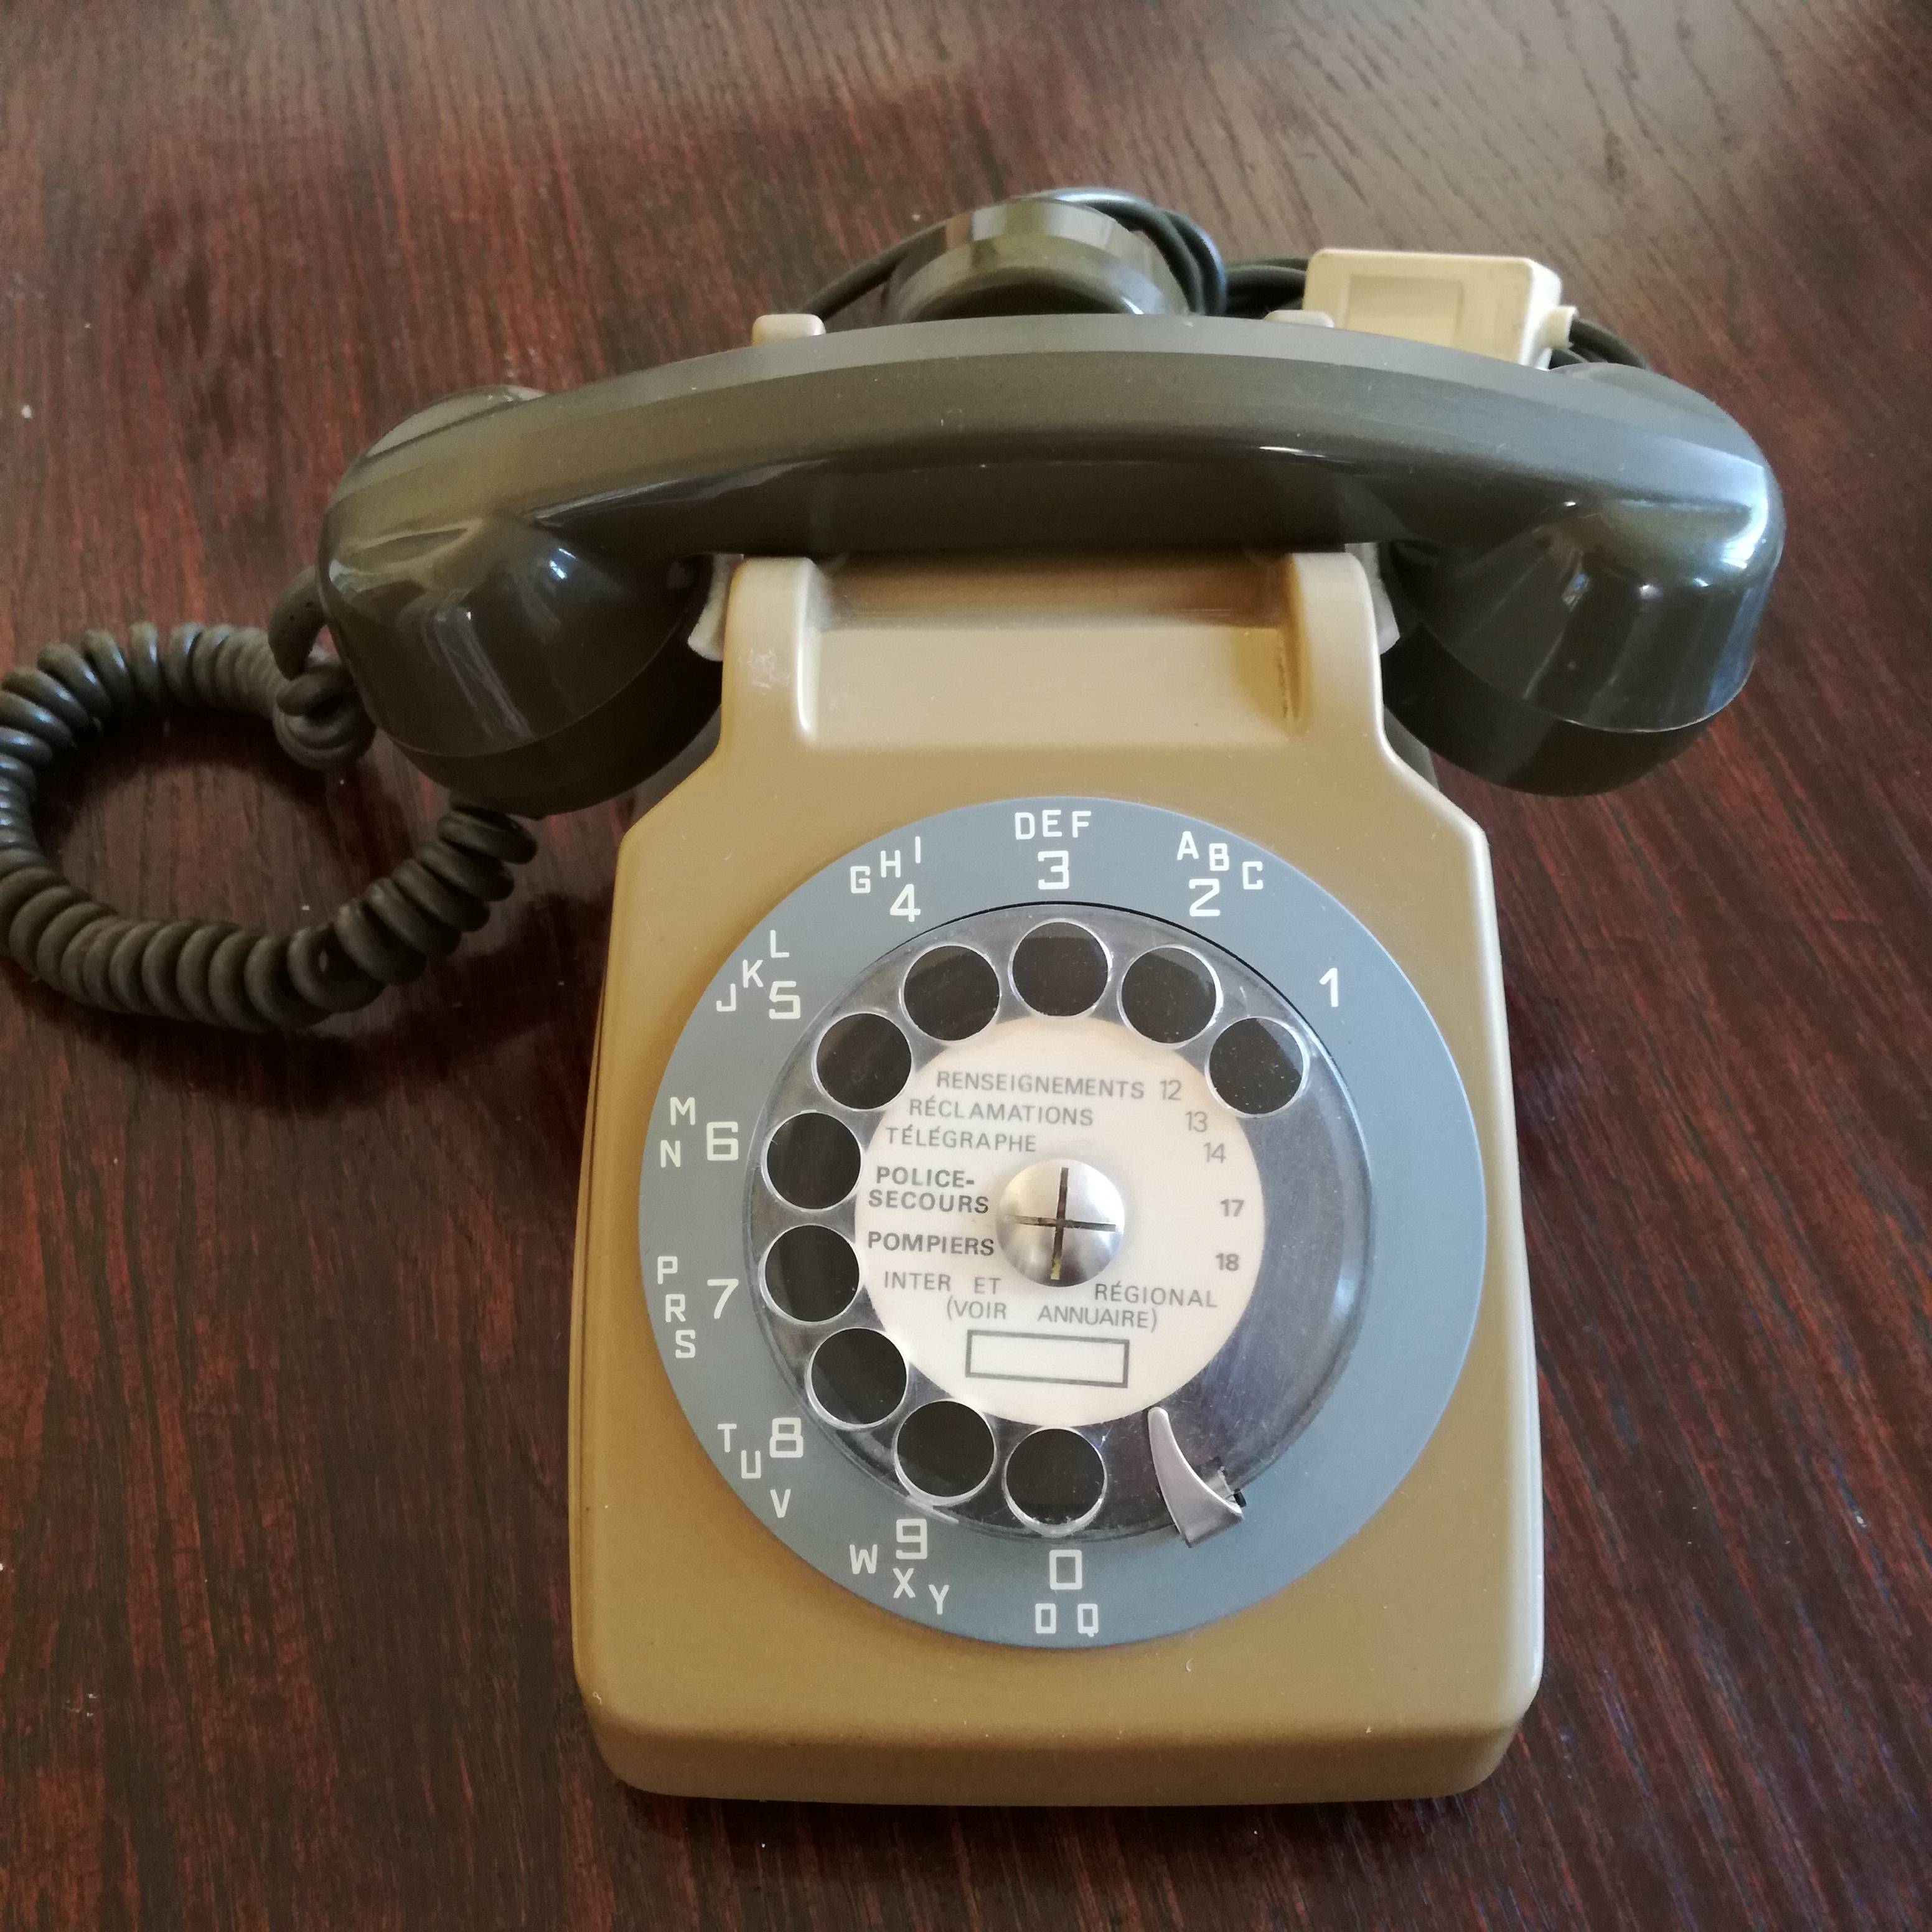 Objet de décoration - Téléphone Vintage